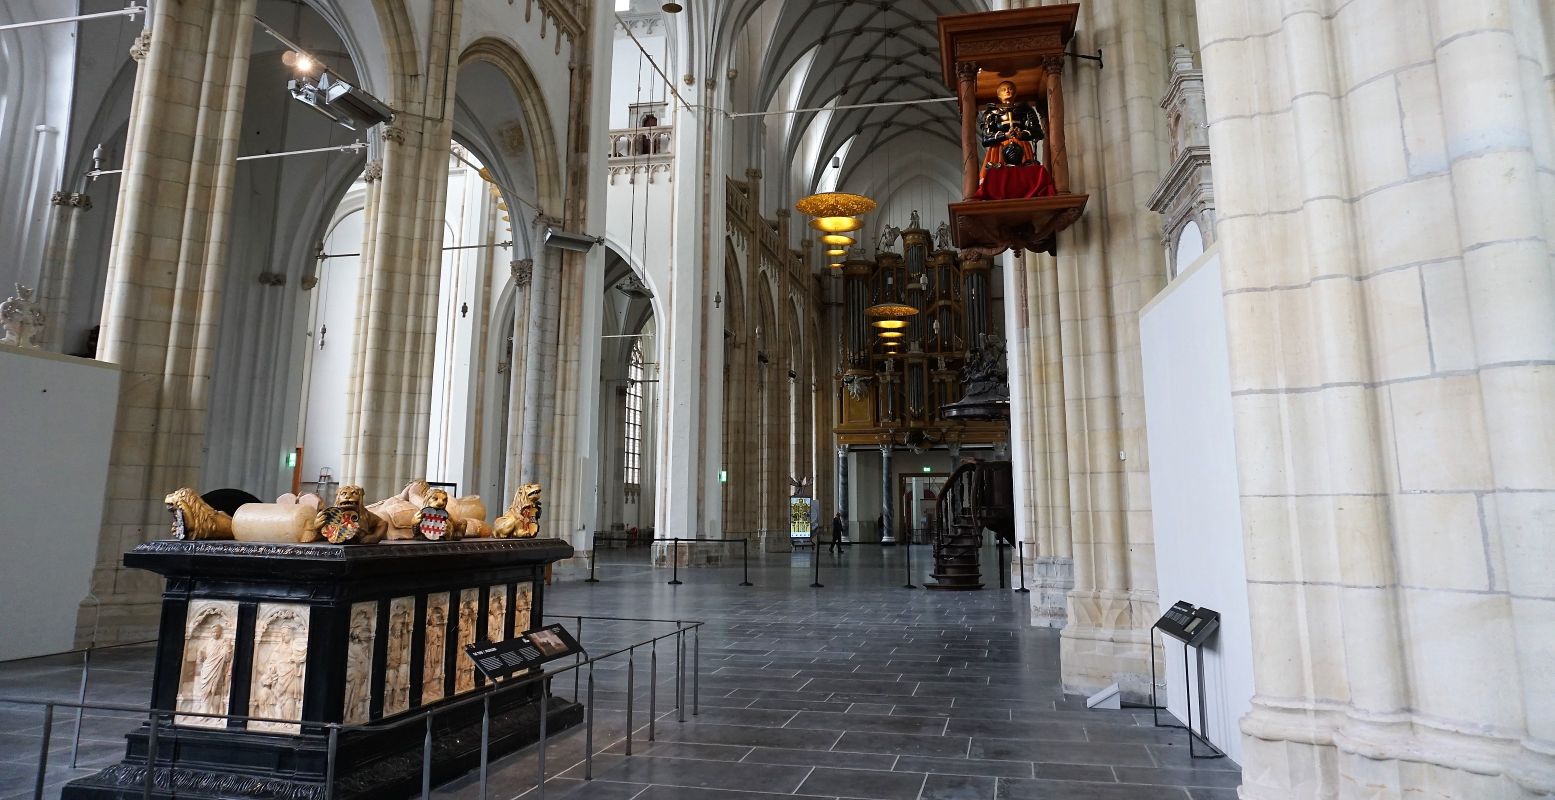 Dé eyecatchers in de kerkzaal: linksvoor het praalgraf en rechtsboven het harnas van hertog Karel van Gelre. Foto: DagjeWeg.NL